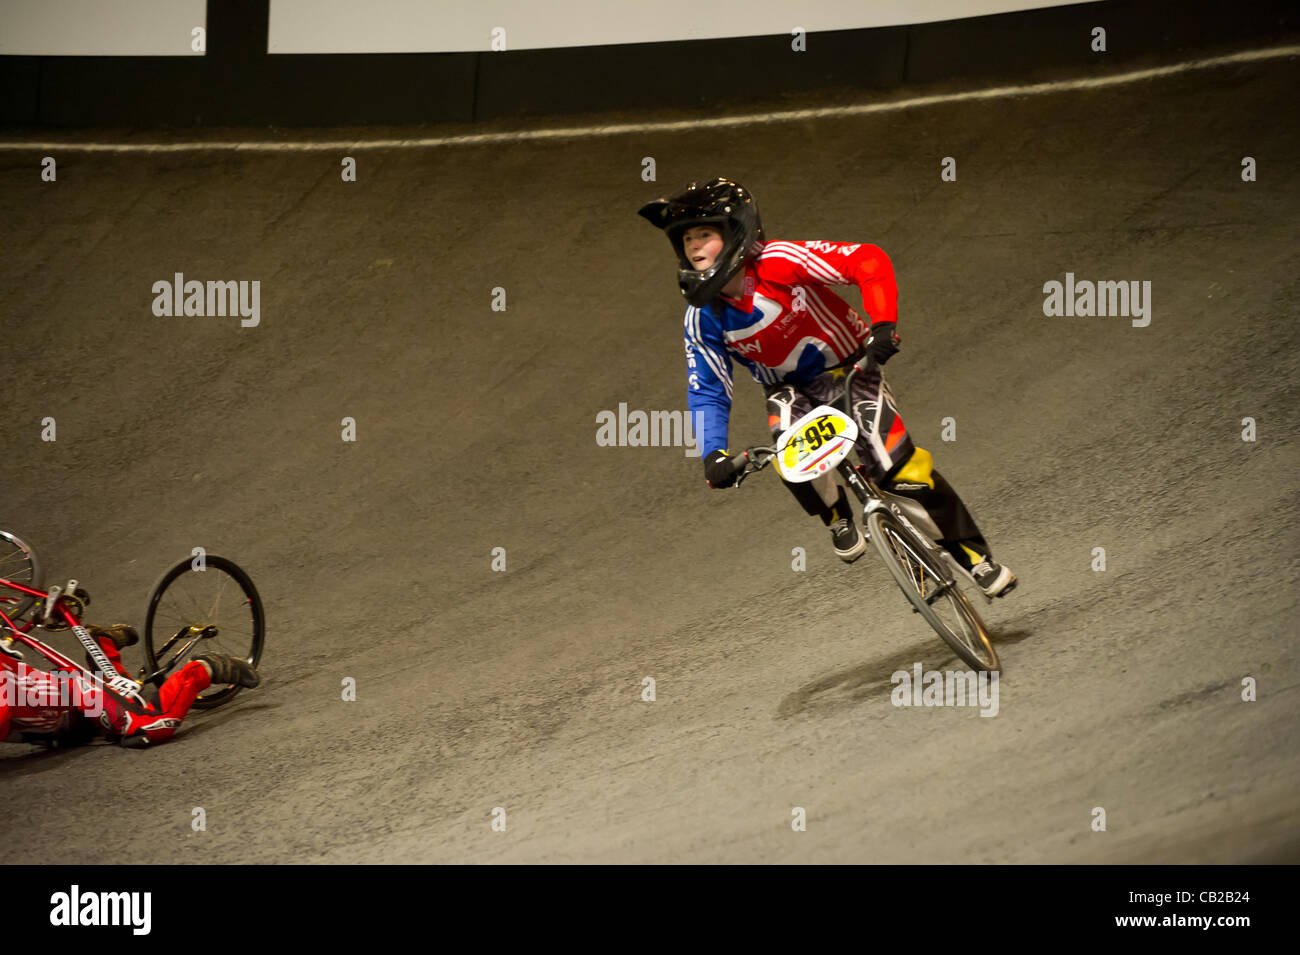 23.05.2012 Birmingham, Inghilterra. Team GBR formazione durante l'UCI BMX Campionati del mondo presso il National Indoor Arena. Foto Stock